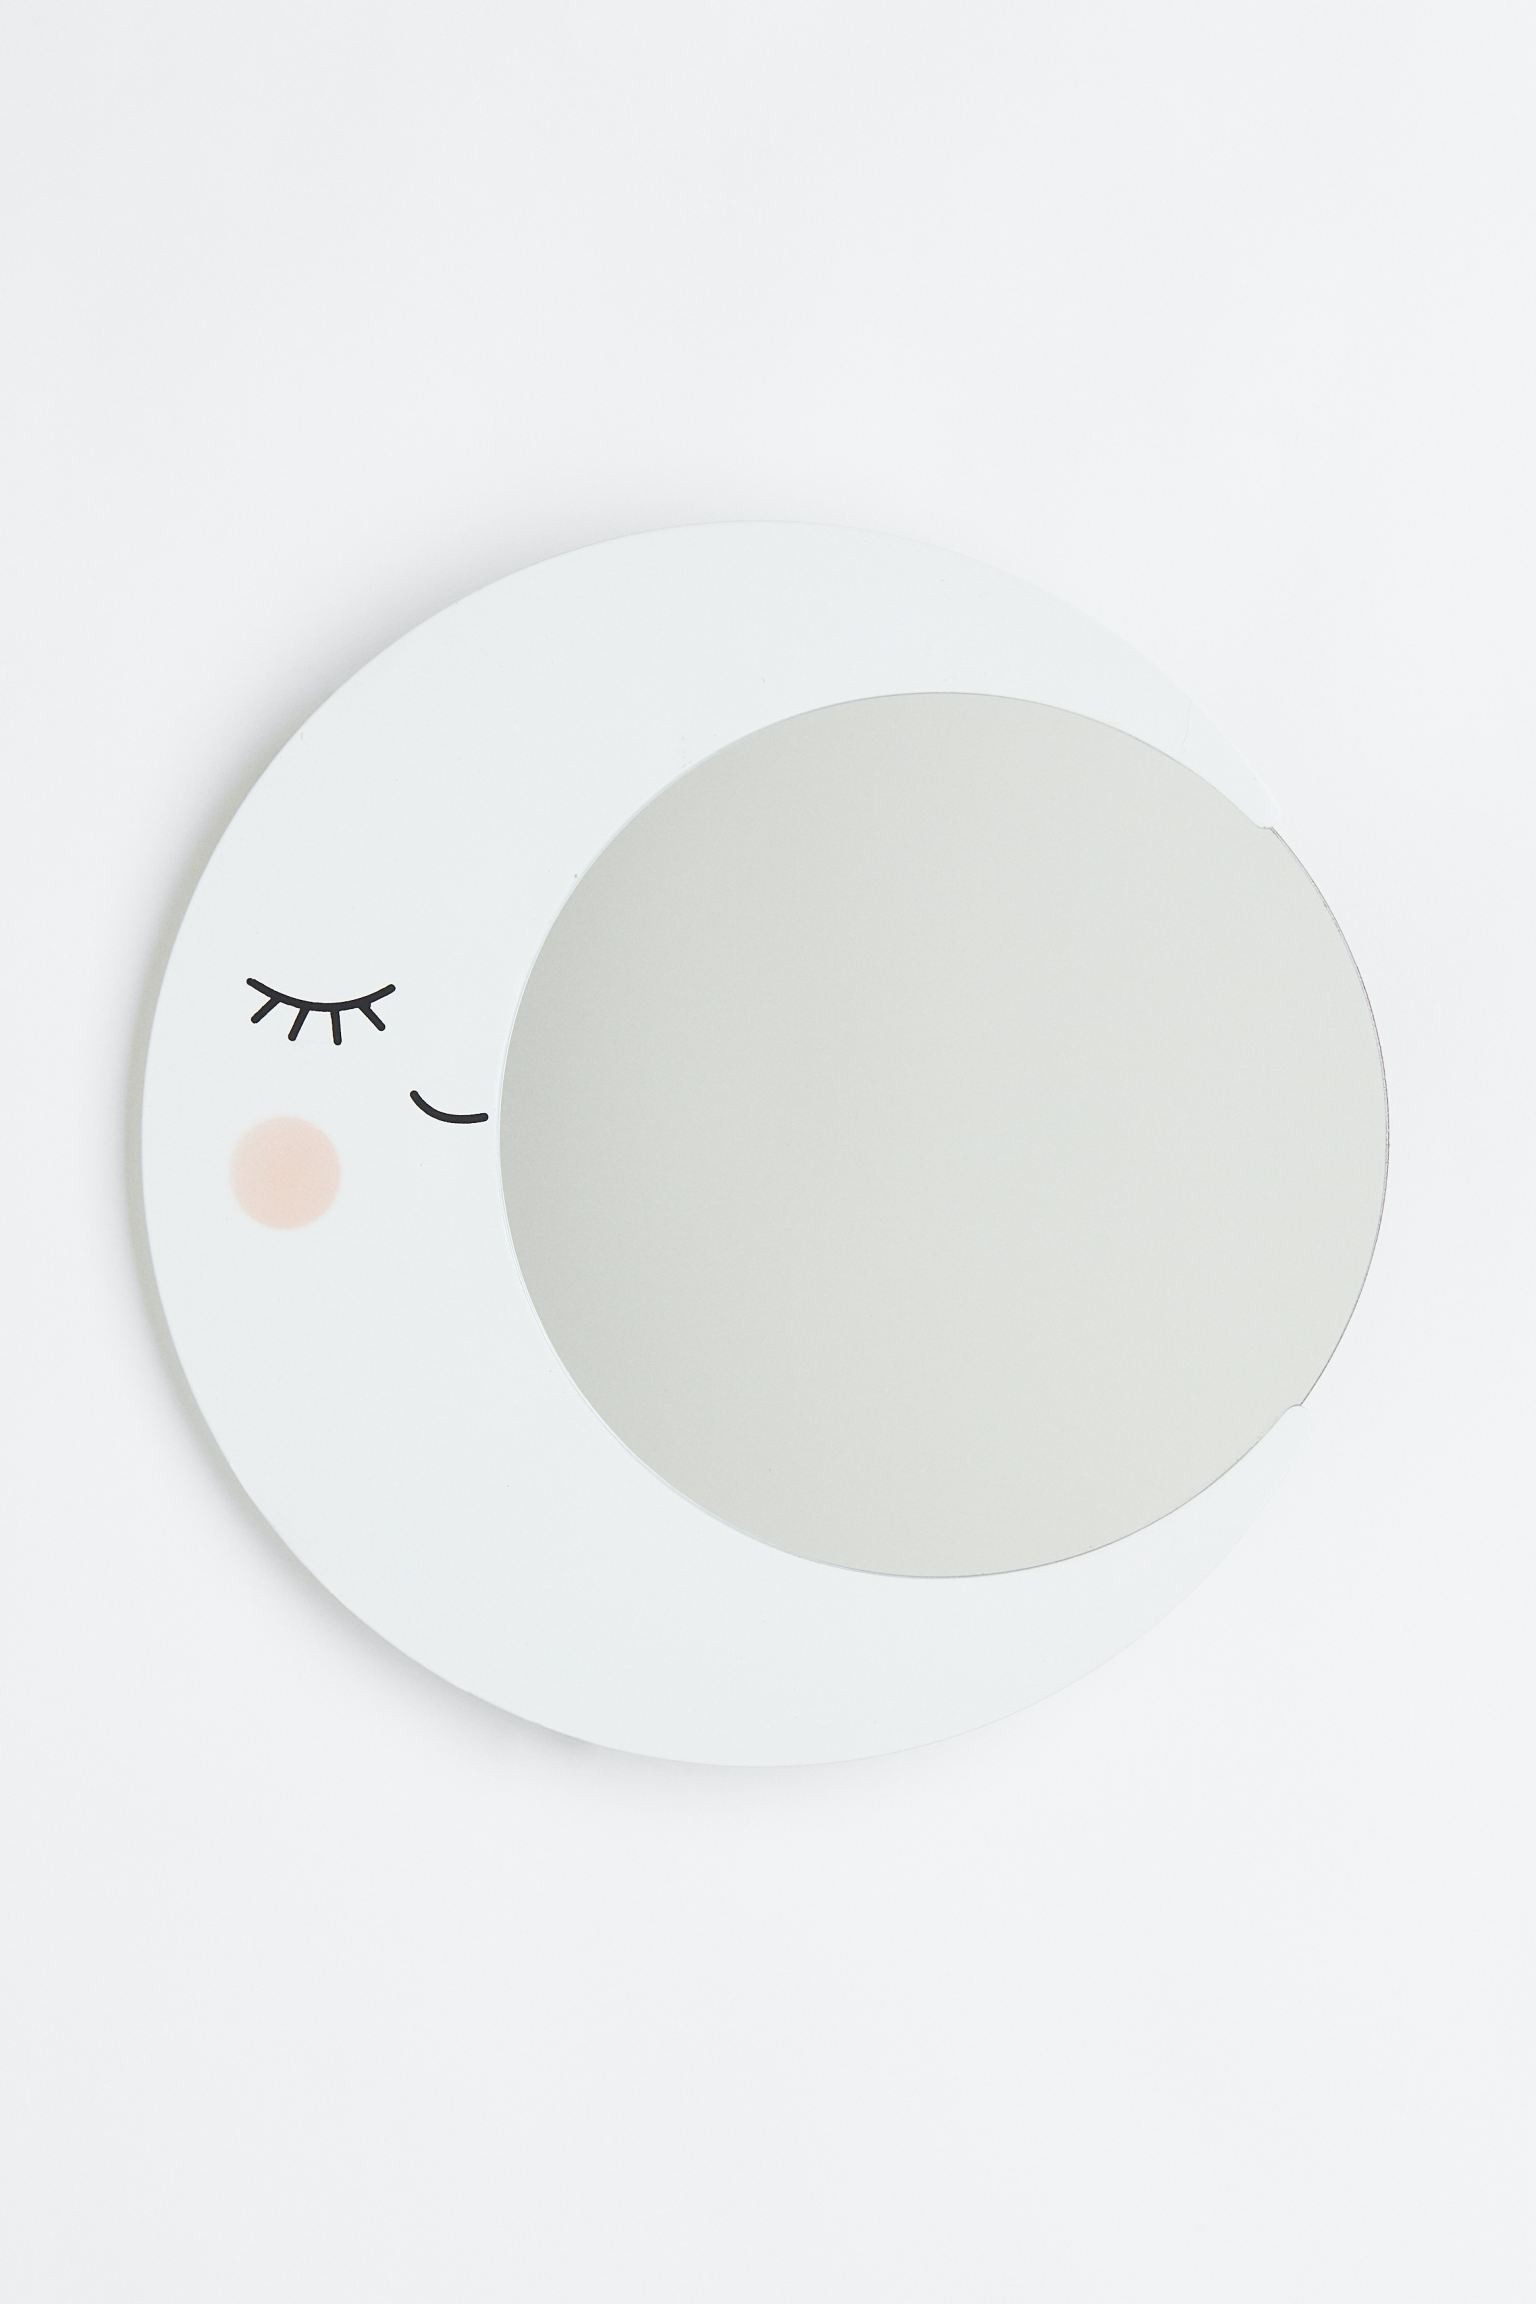 H&M Home Зеркало в форме луны, Белая Луна 1108836001 | 1108836001